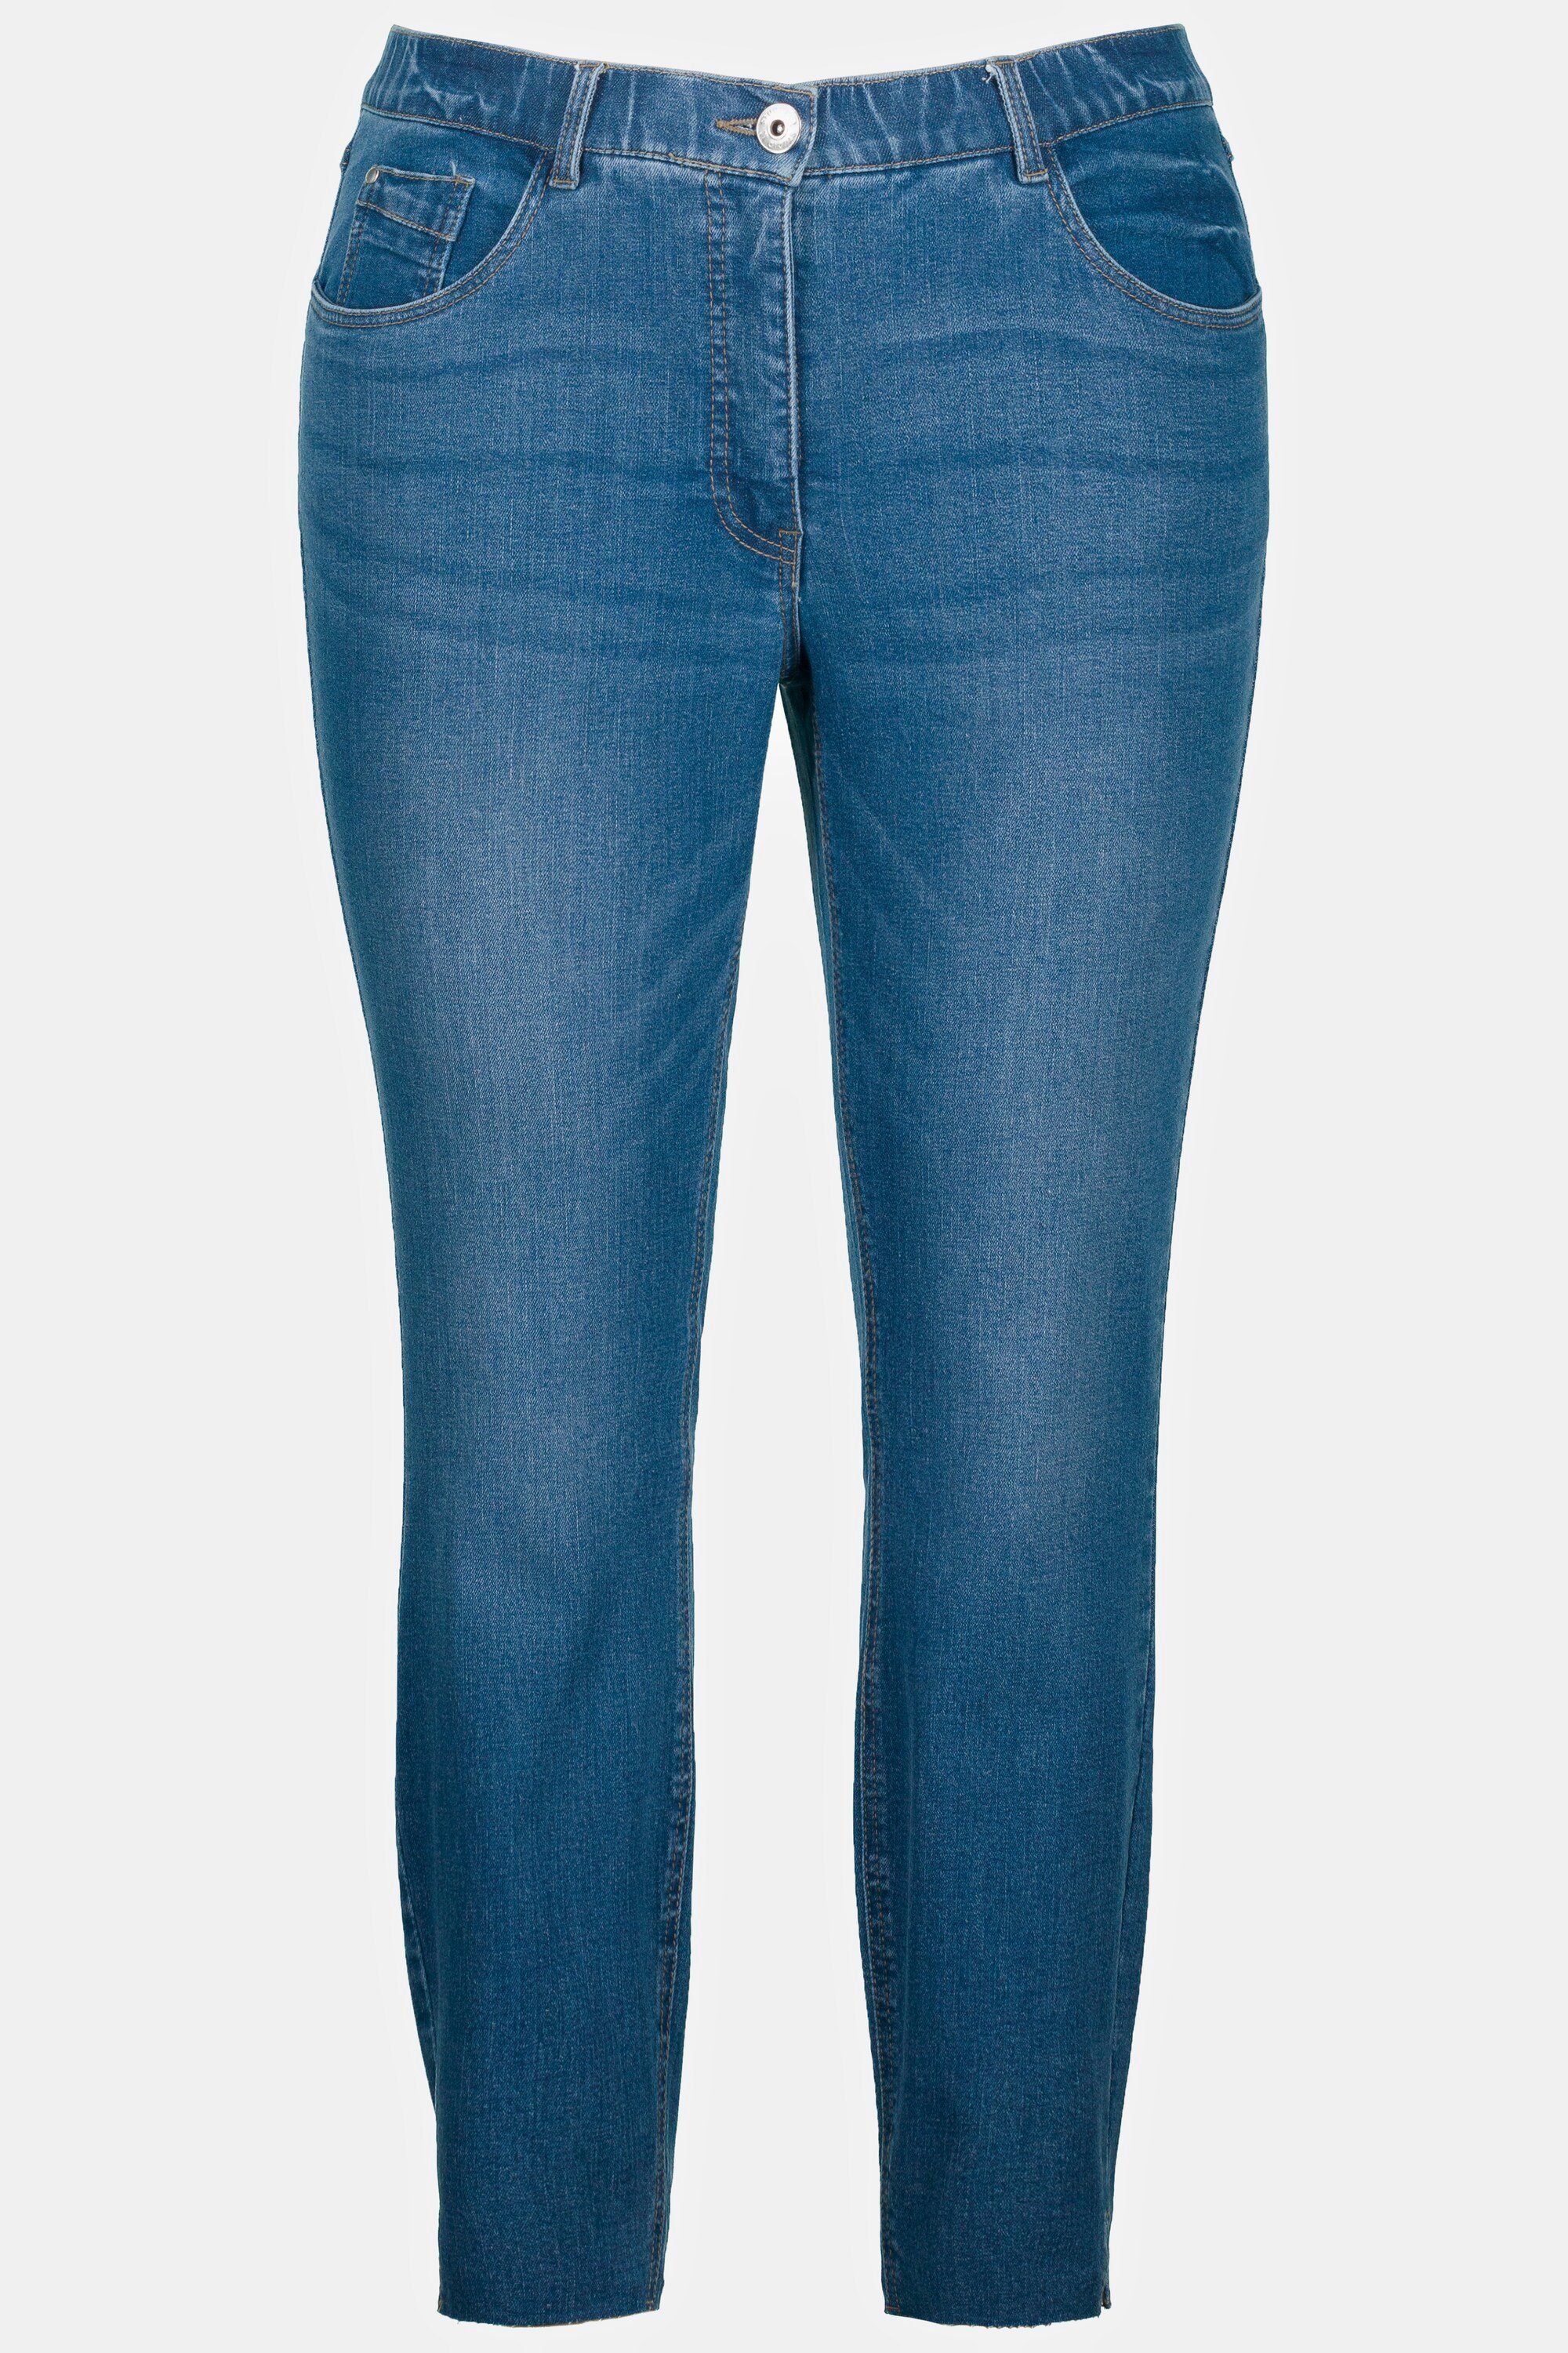 Studio Untold Schlupfhose Skinny Jeans Fransensaum 5-Pocket denim blue Schlitz schmal